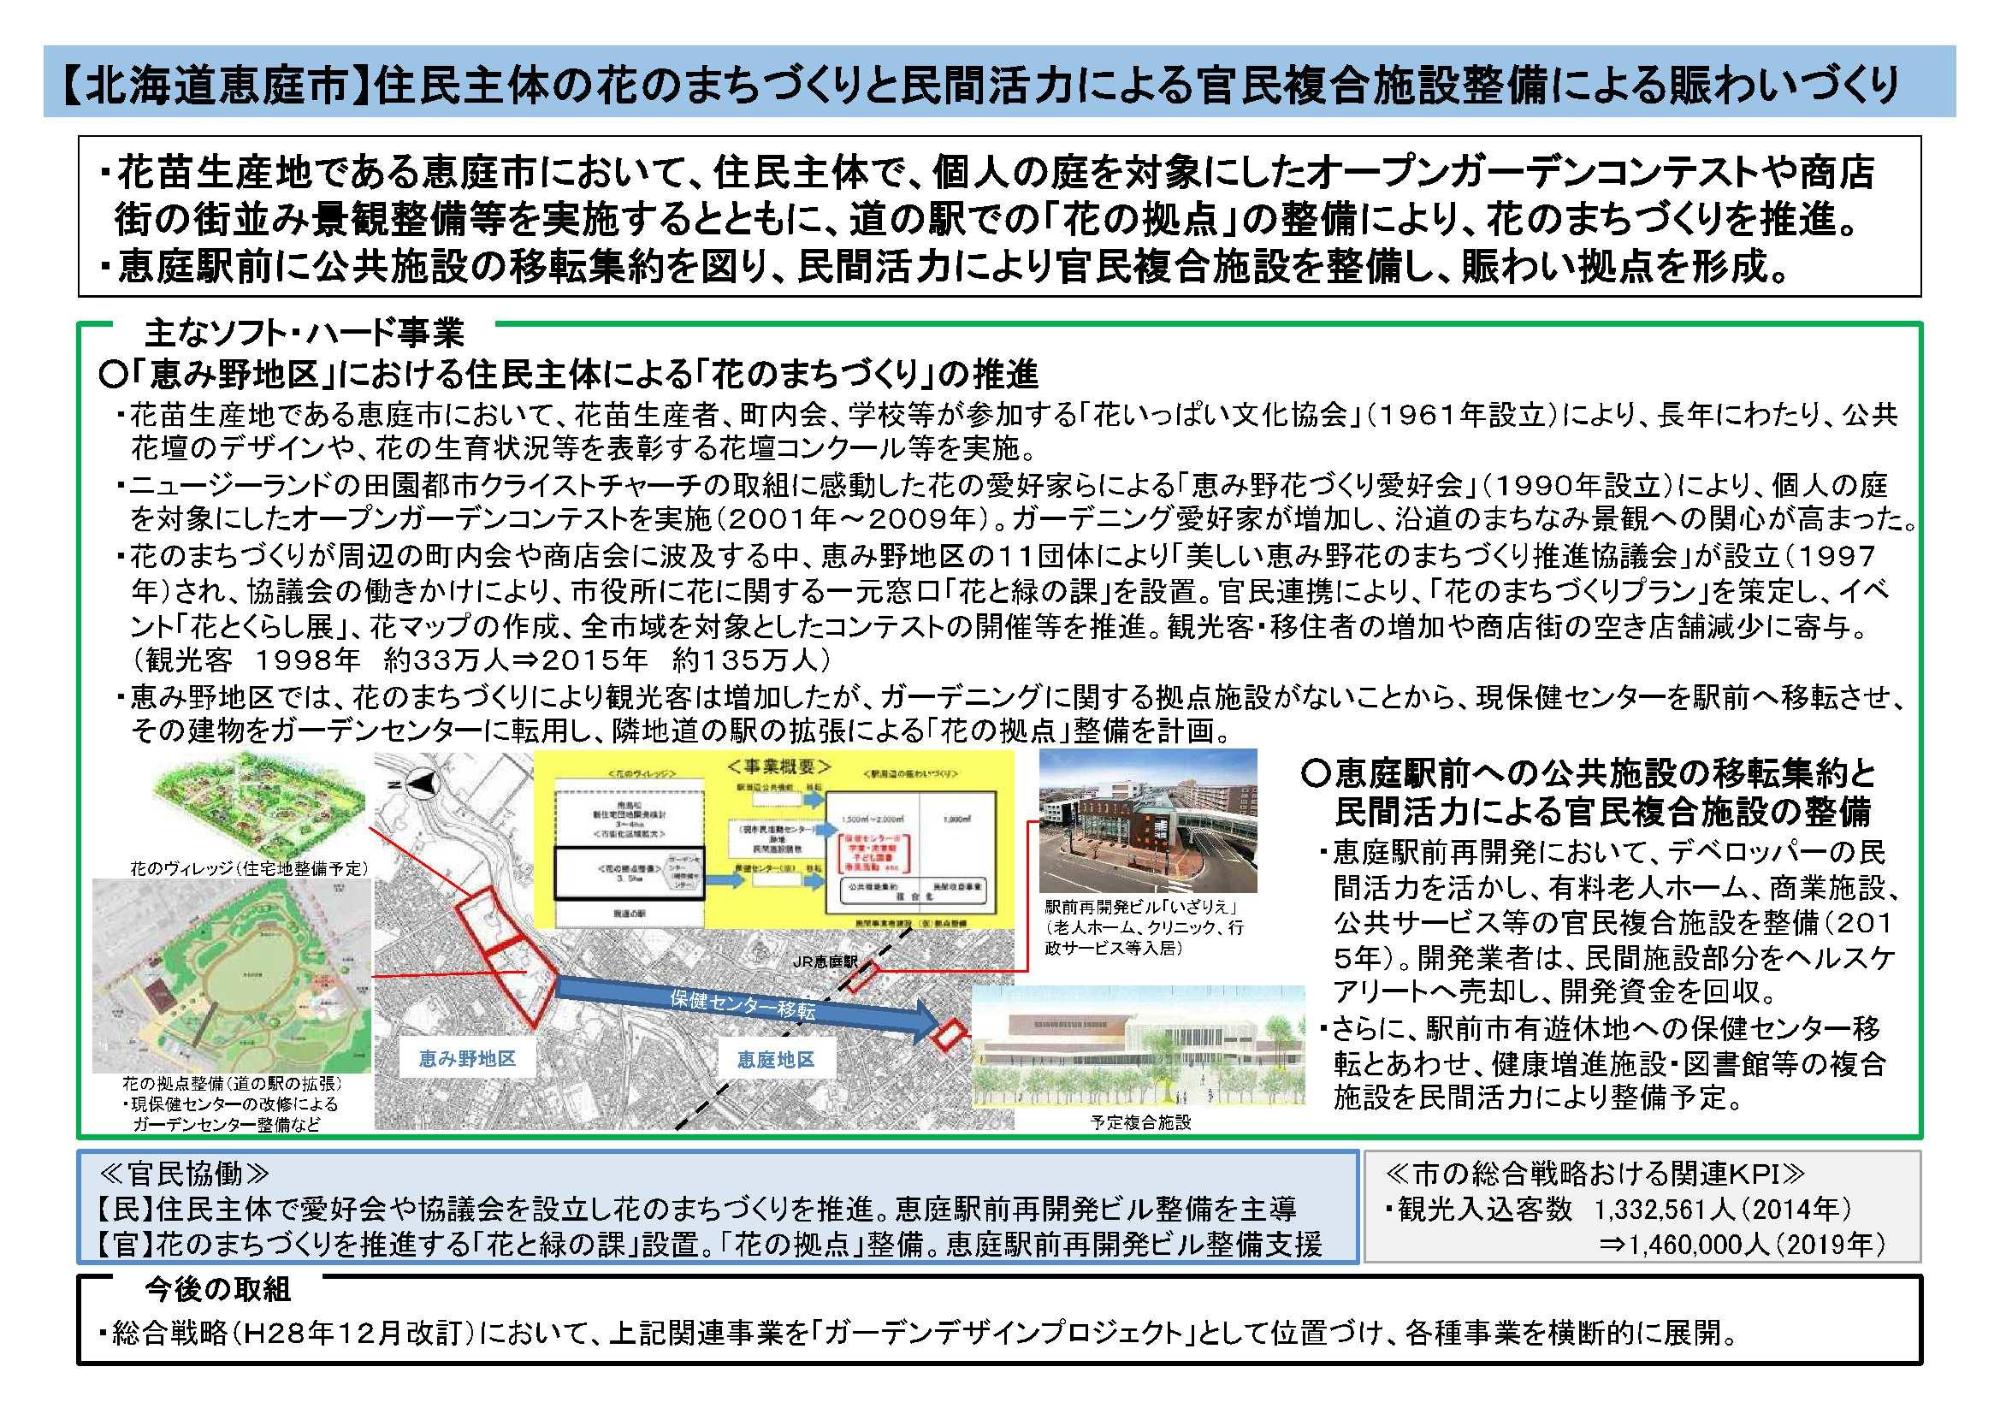 【北海道恵庭市】住民主体の花のまちづくりと民間活力による官民複合施設整備による賑わいづくりについての図